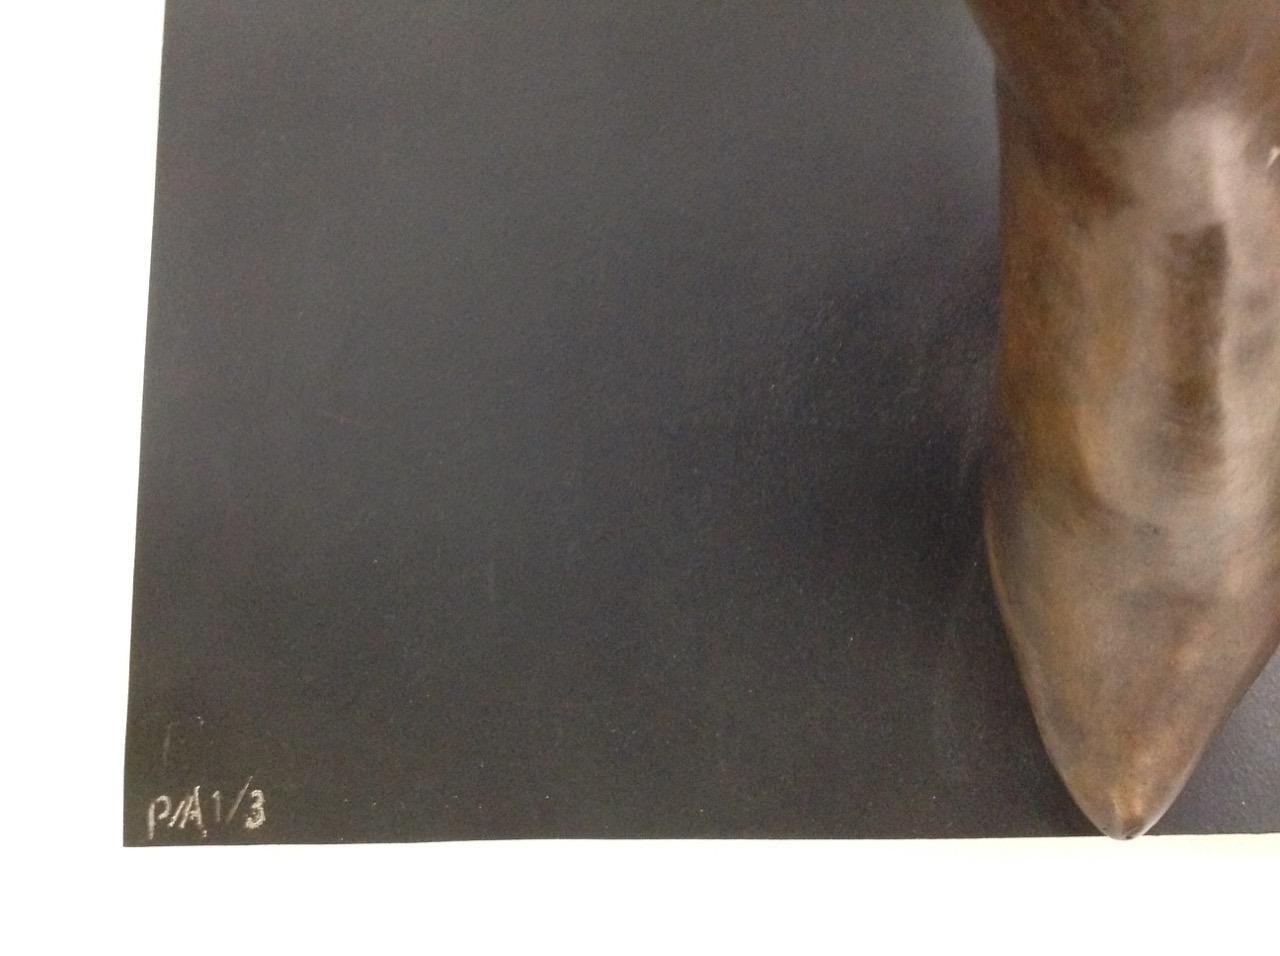 Jorge Segui
Magische Frau, 2019
Bronze. 1/3 AP
83.8 x 91.4 x 59.6 cm  33 x 36 x 23.5 in.
Signiert und nummeriert.

Jorge Seguí, geb. 1945, Argentinien. Er besuchte die Schule der Schönen Künste Argentiniens mit Spezialisierung auf Bildhauerei an der